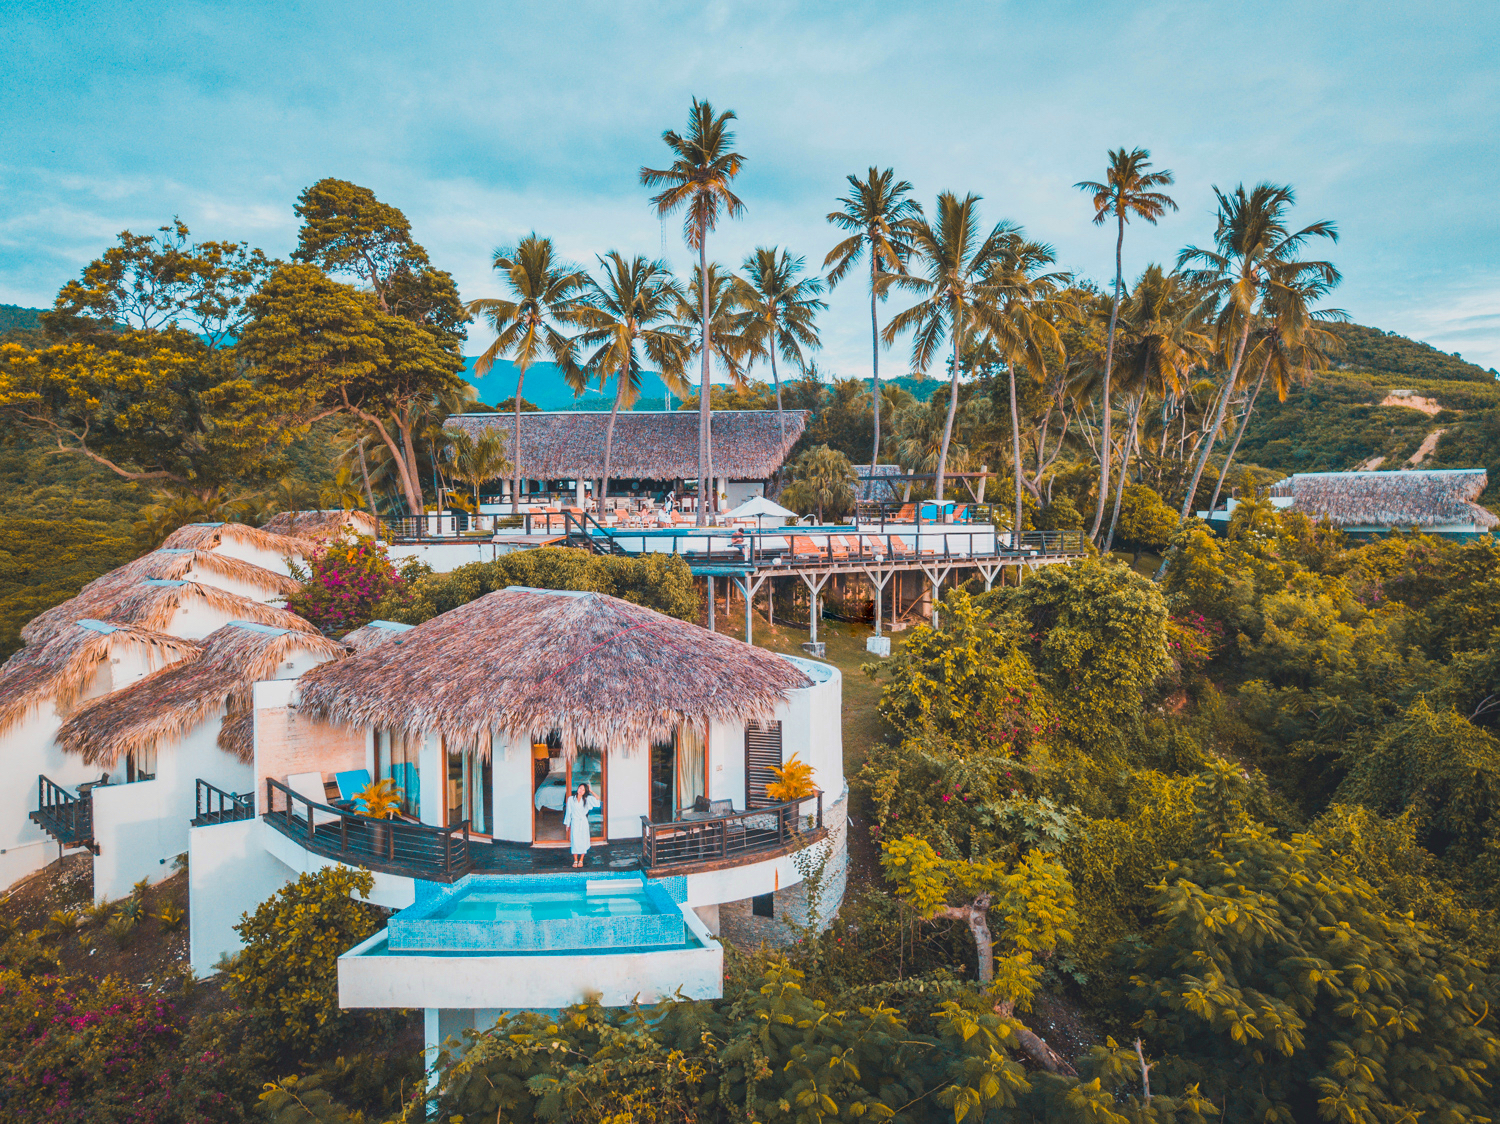 Casa Bonita Tropical Lodge seleccionado “Hotel Ecológico” en premios  ADOTUR 2019